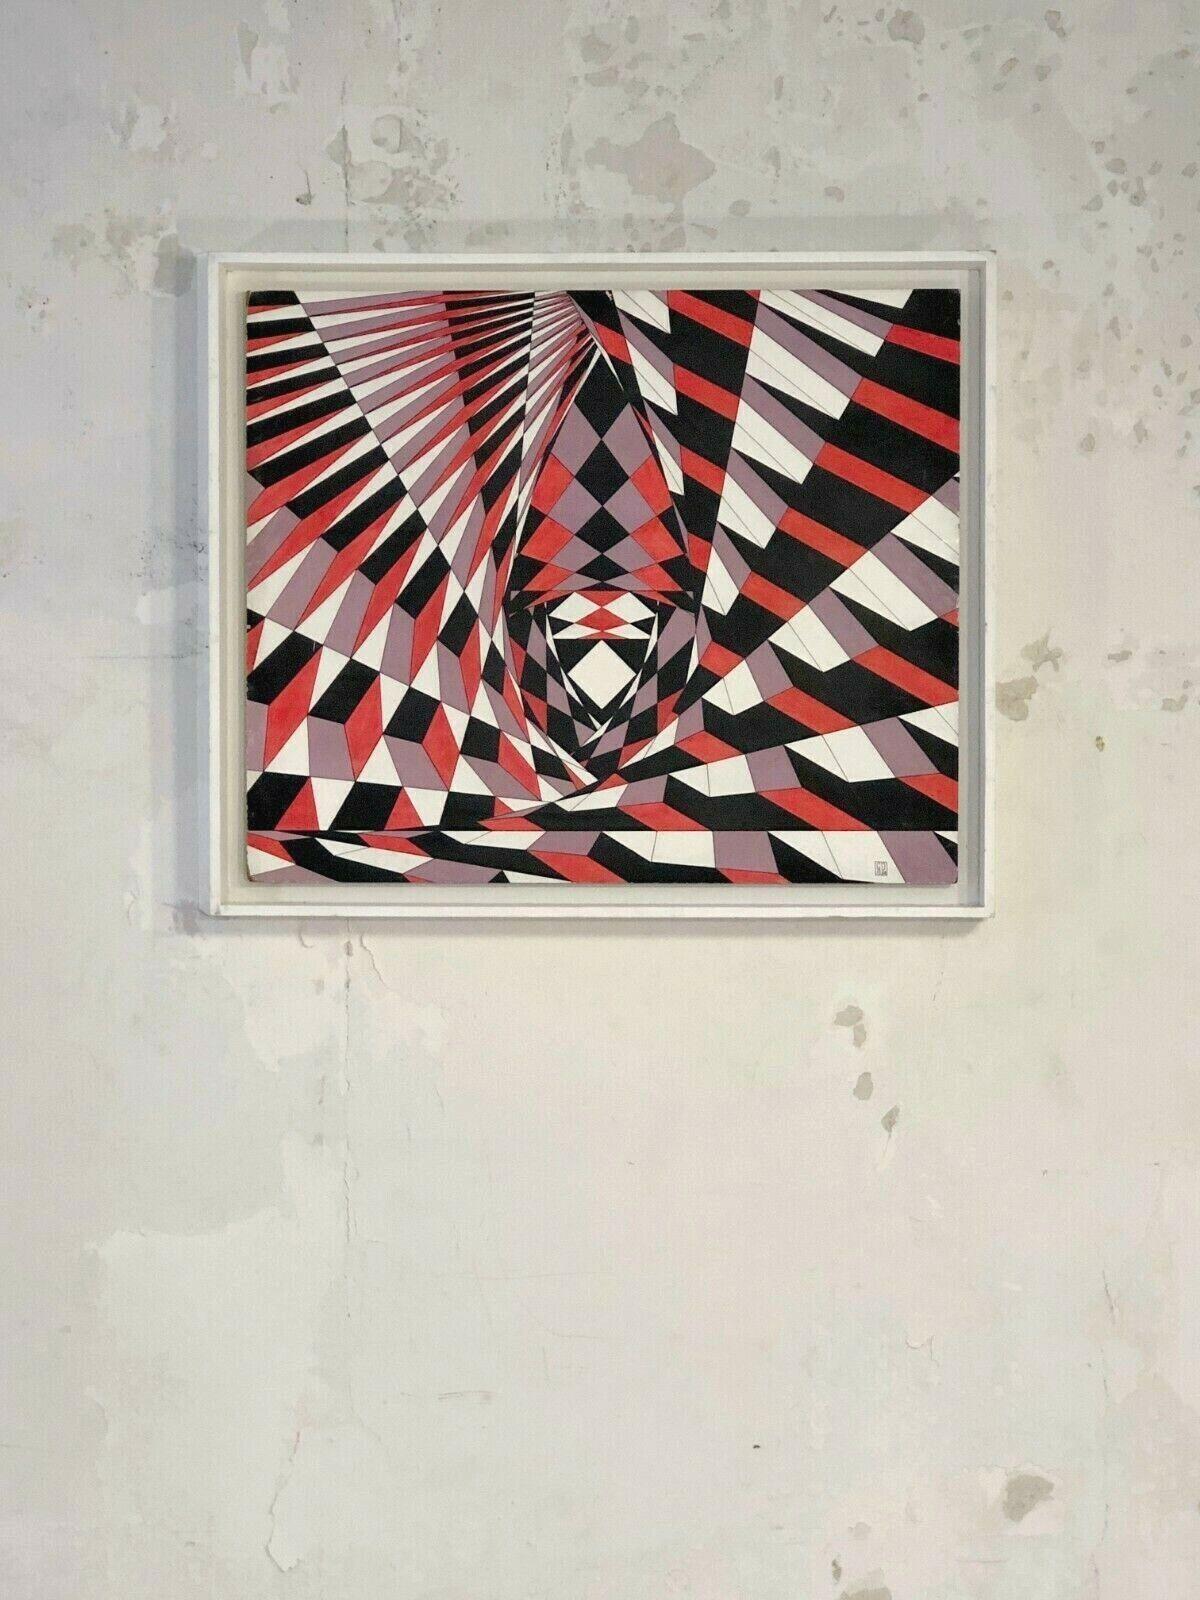 Ein authentisches kinetisches Gemälde, postmodernistisch, abstrakt geometrisch, Op-Art, Komposition aus roten, violetten und schwarzen geometrischen Formen auf Tafel in seiner originalen amerikanischen Schachtel aus weiß lackiertem Holz, auf der